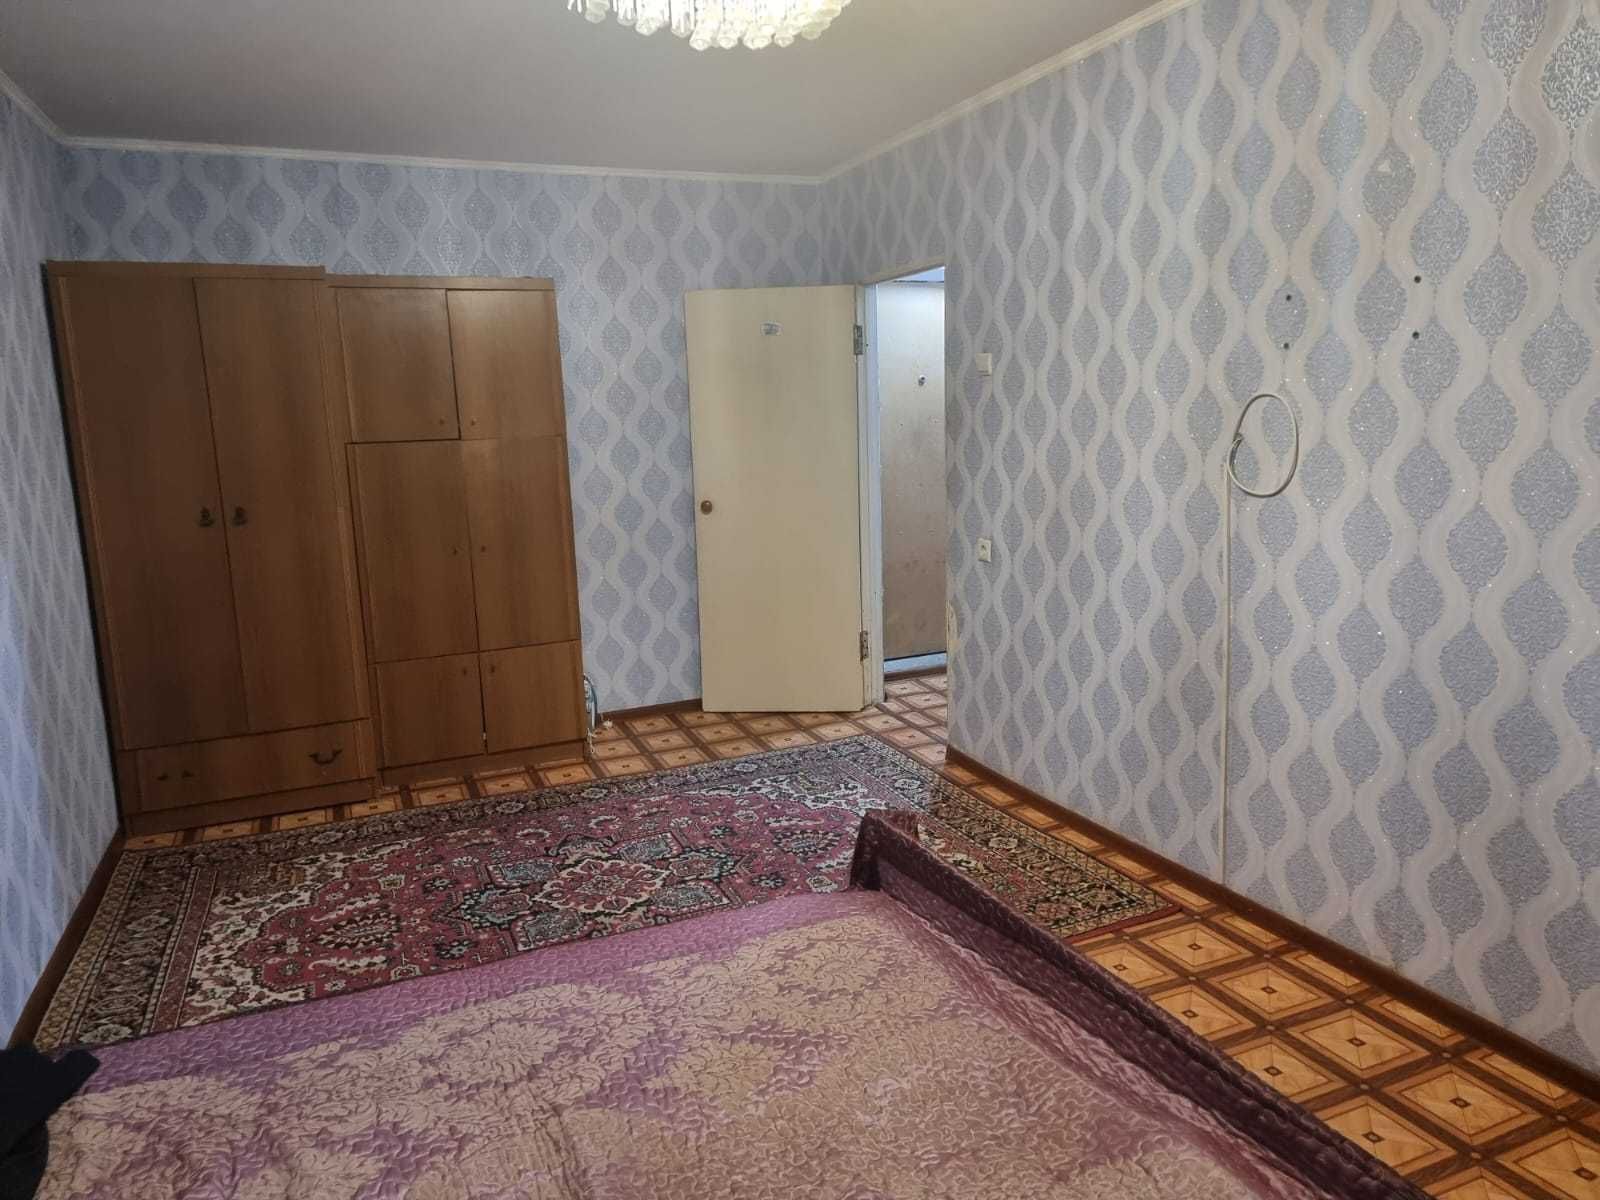 Продам 1- комнатную квартиру на 26 квартале по ул. Казахстанская